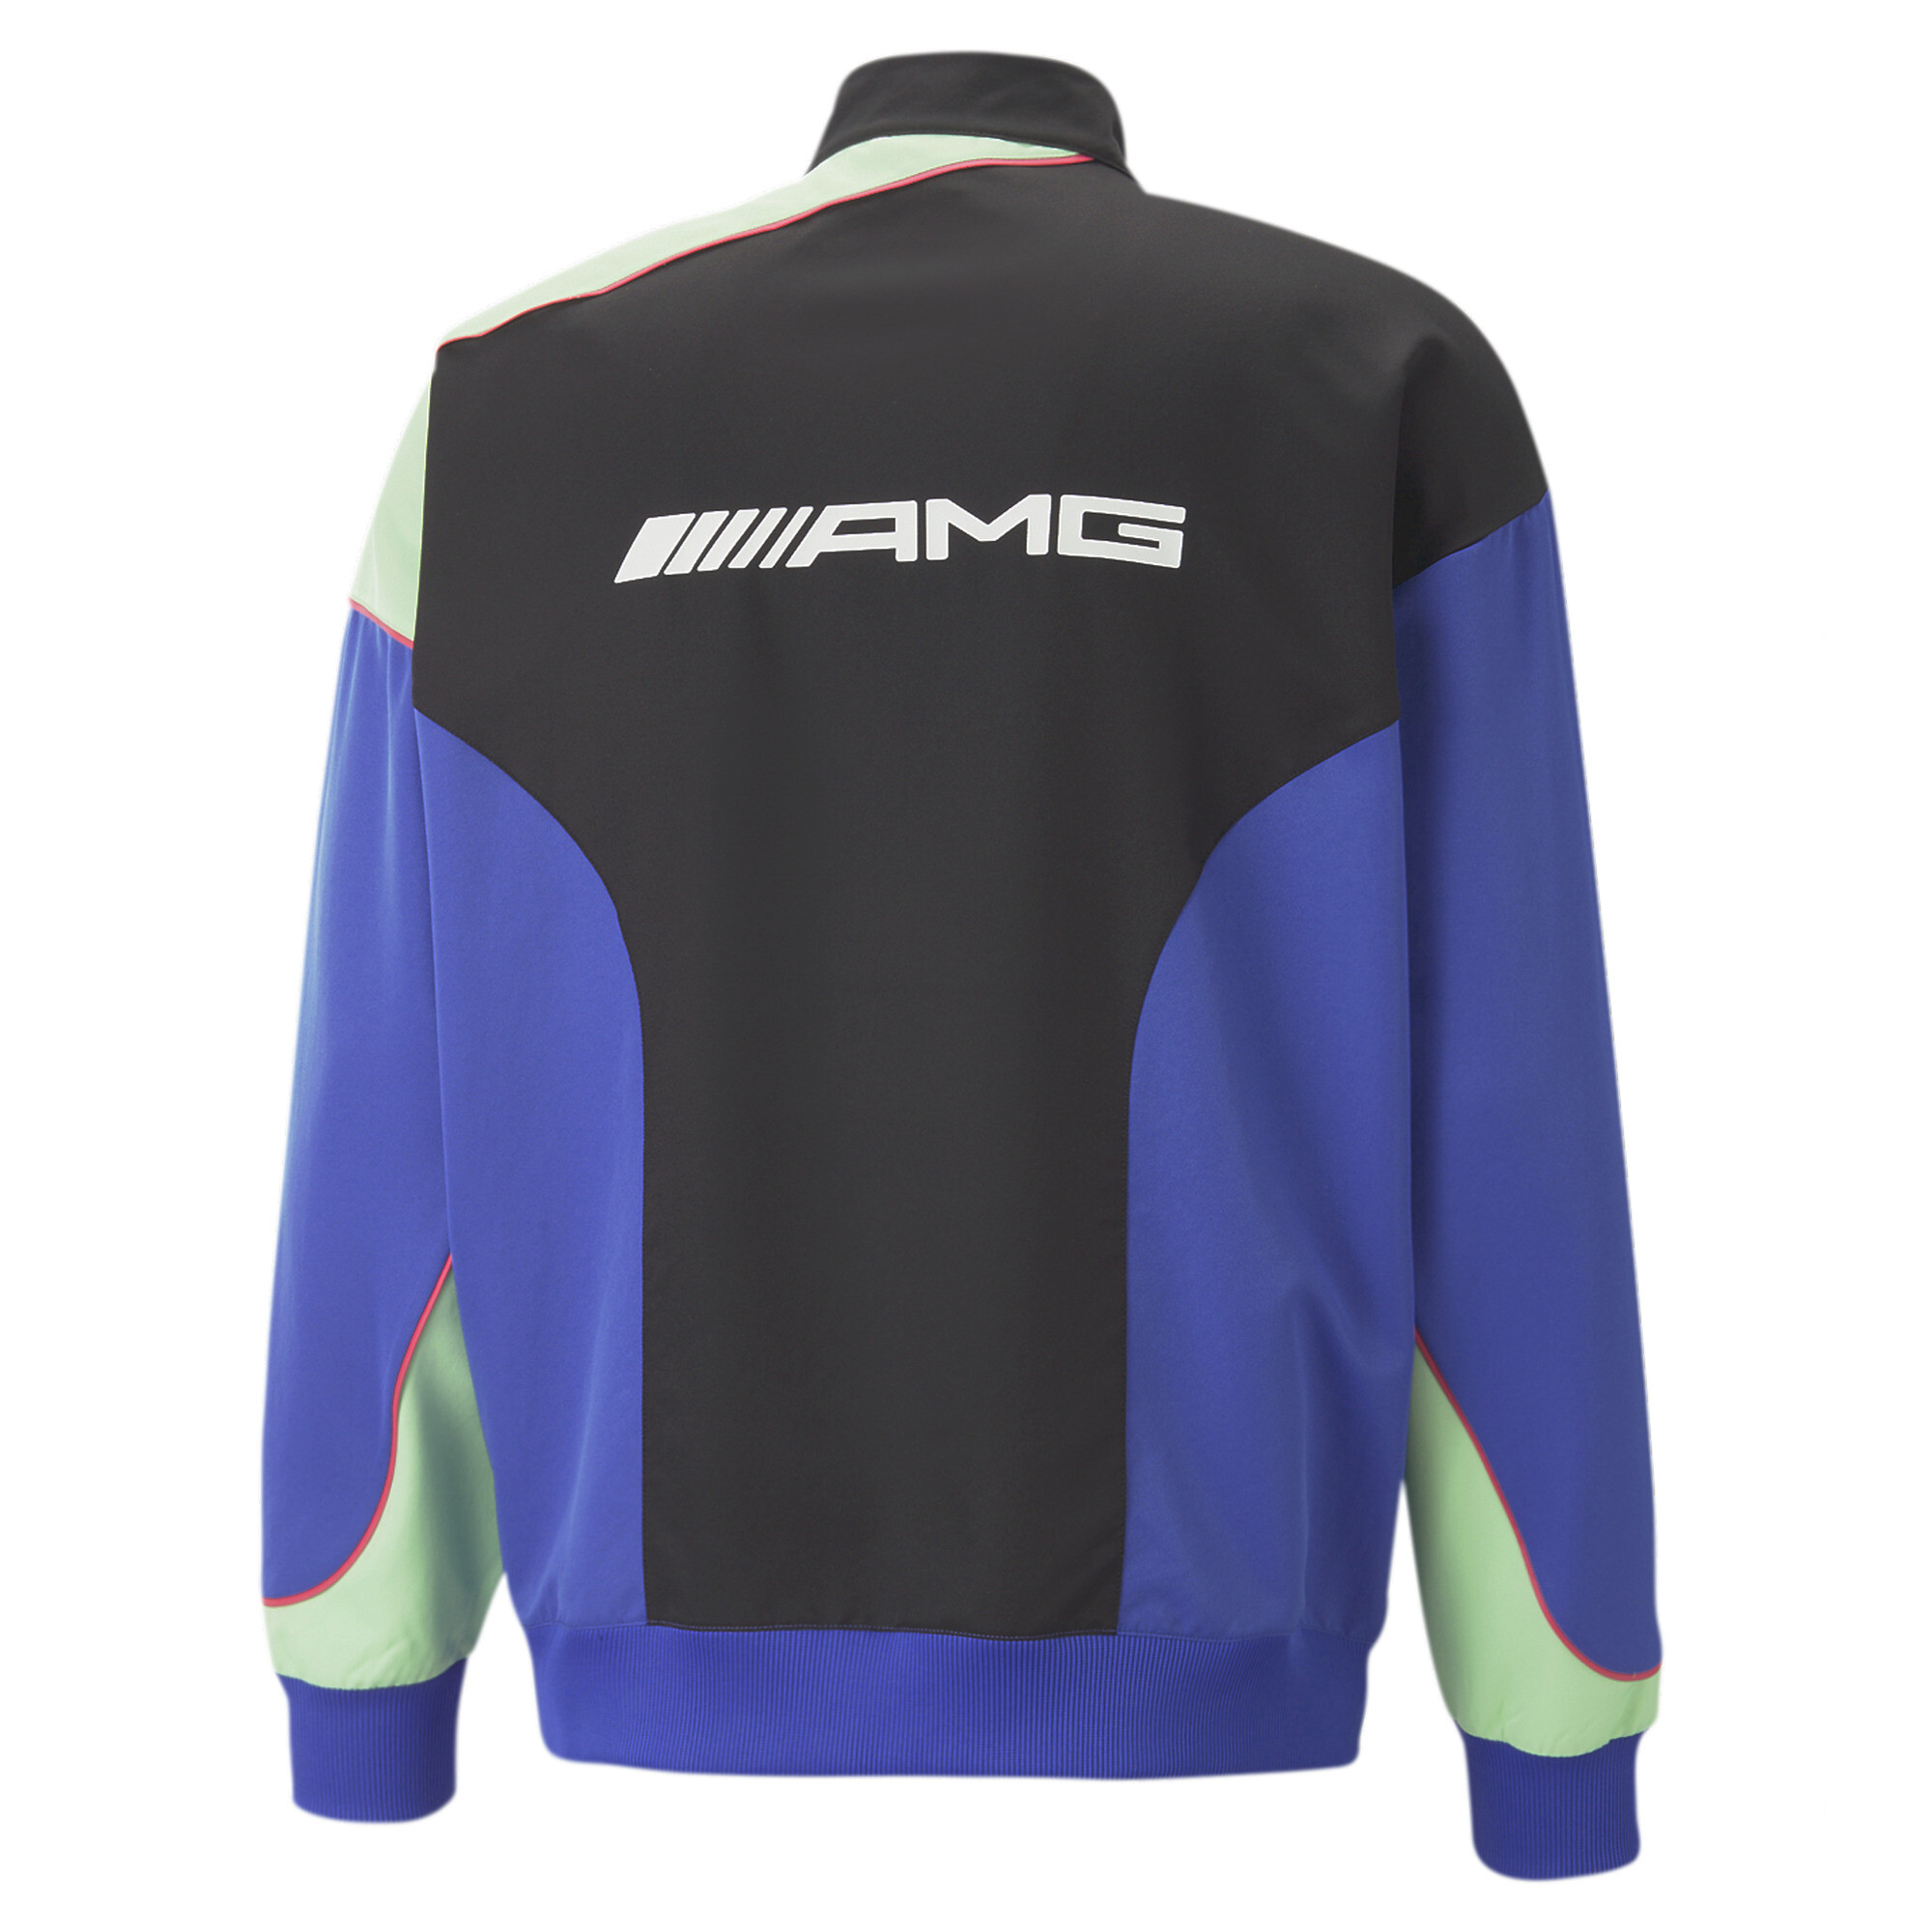 Men's PUMA Mercedes-AMG Motorsport Woven Jacket Men In Blue, Size Large